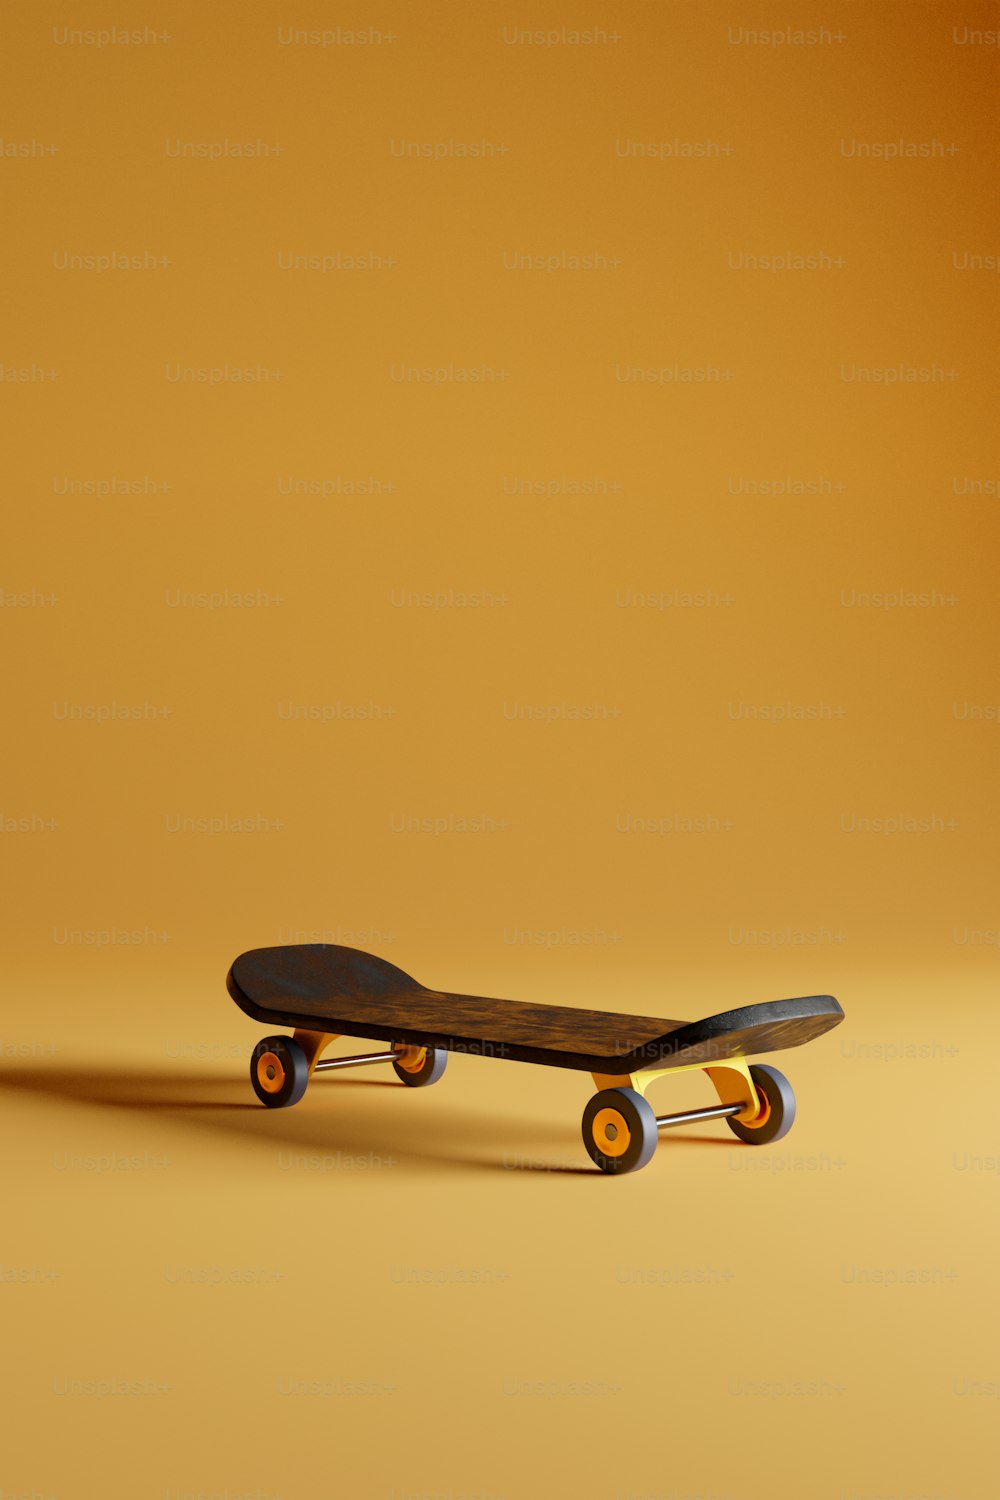 노란 바닥 위에 앉아 있는 스케이트보드